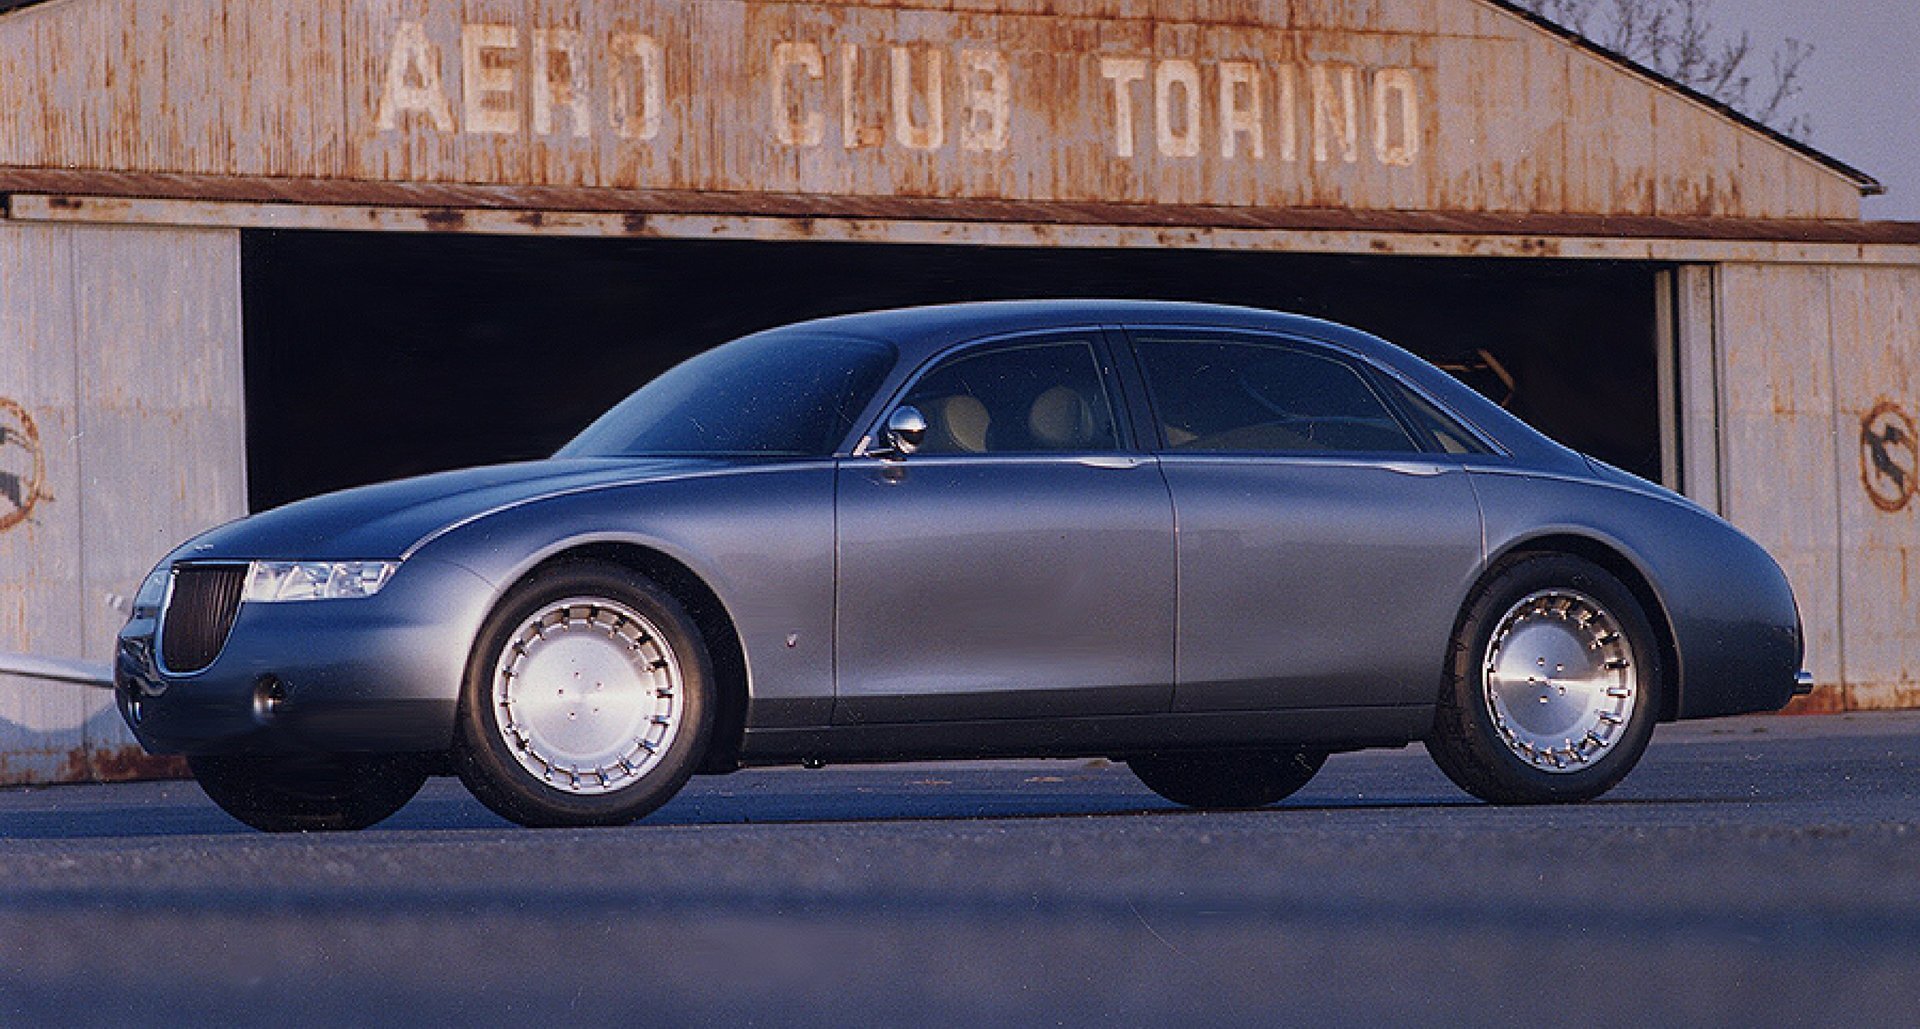 لاگوندا ویگناله؛ سرگذشت یکی از خاص ترین خودروهای جهان از ایتالیا تا سلطان برونئی! (+عکس)